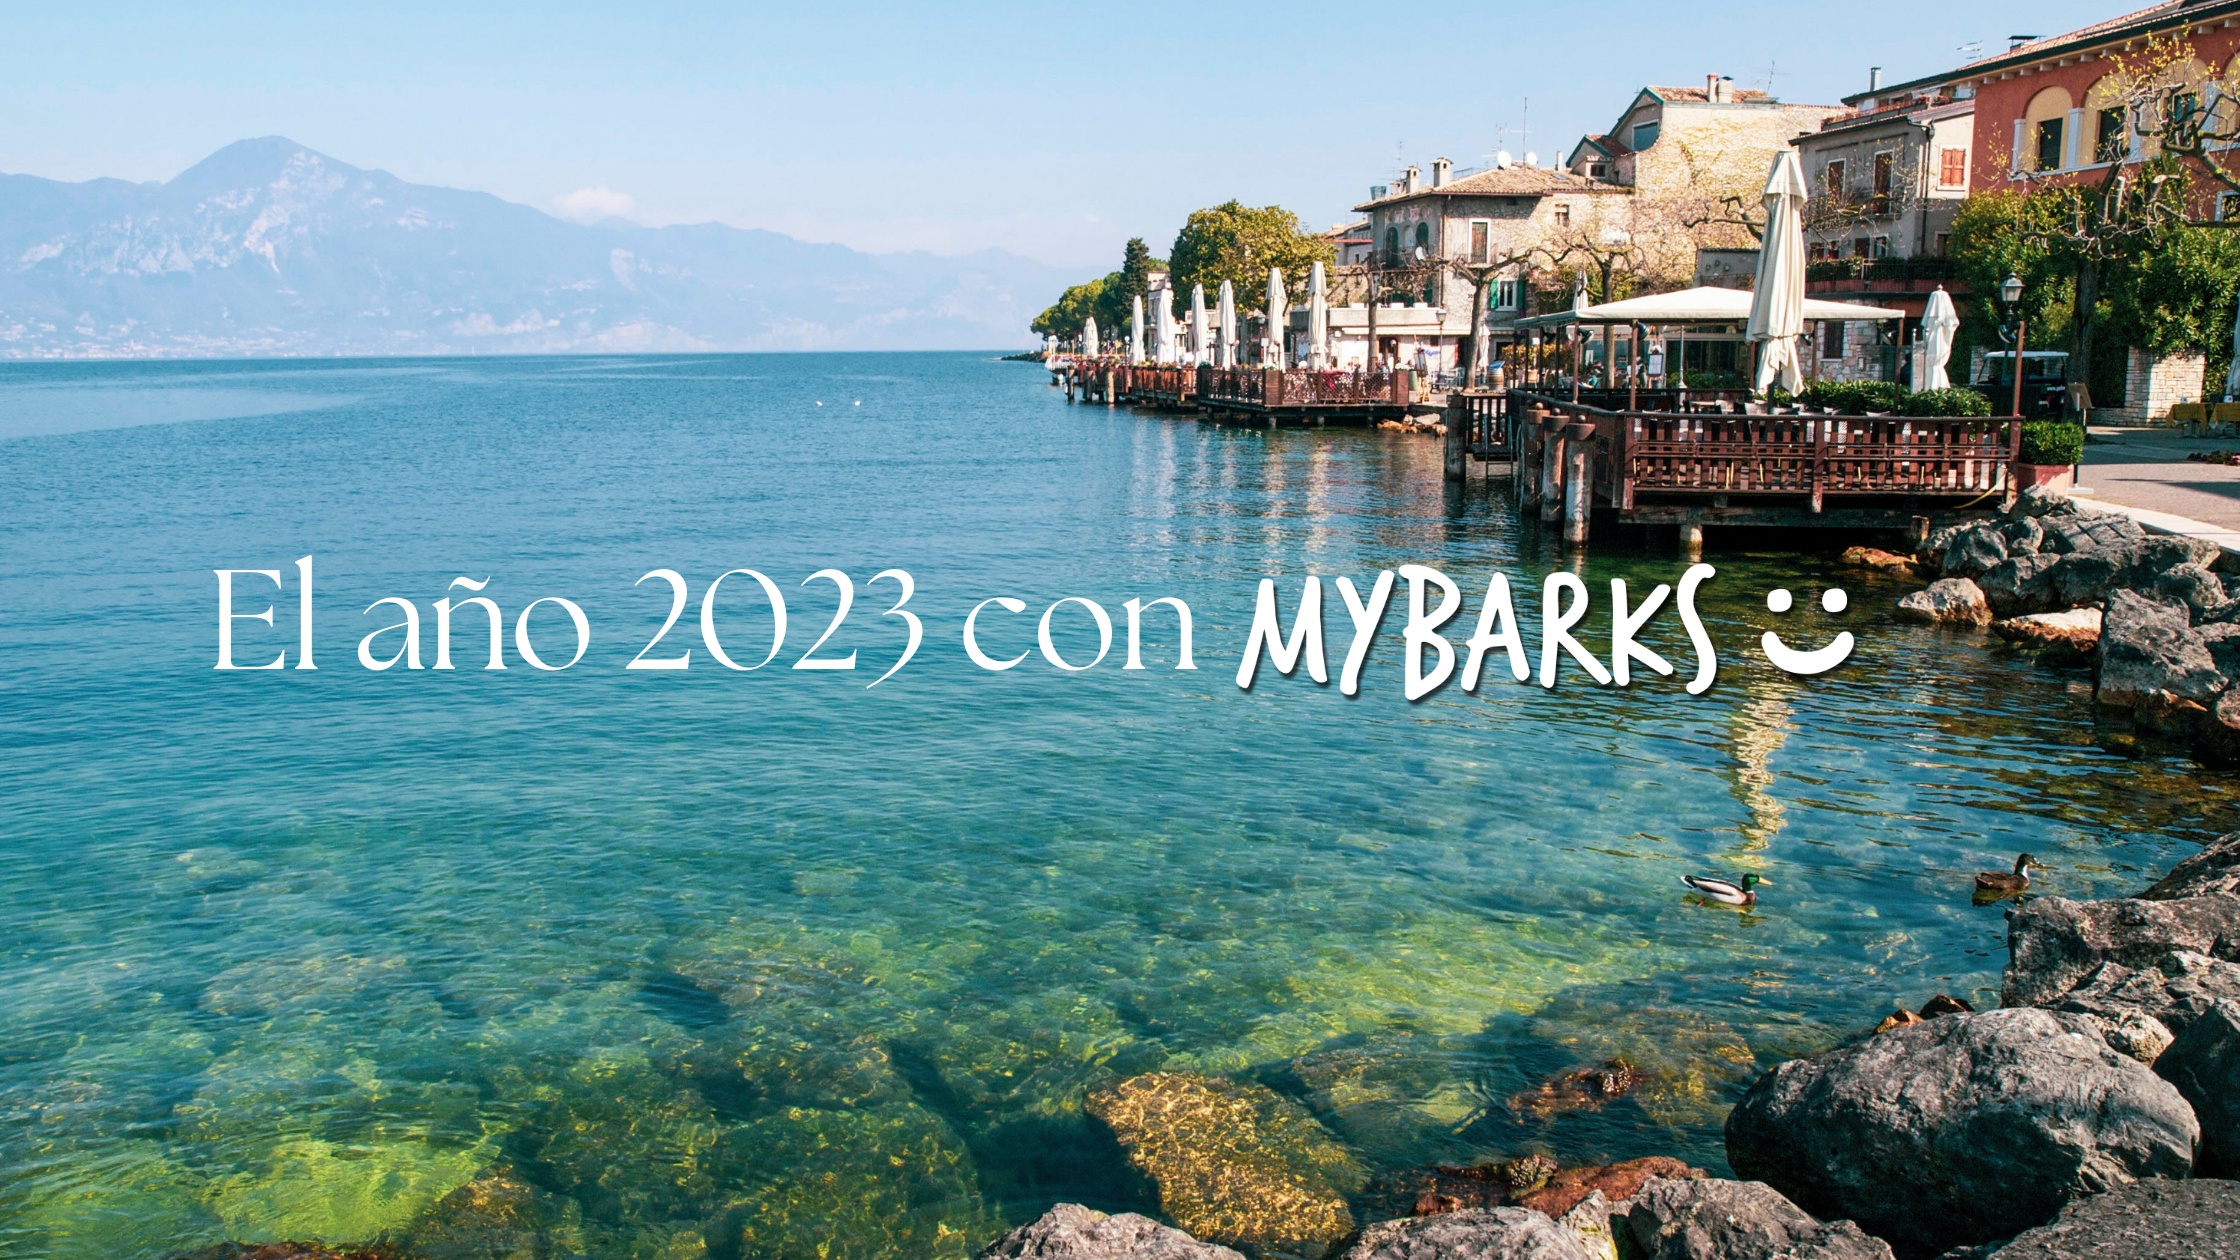 El año 2023 con MyBarks: un viaje por la Esencia Mediterránea y el compromiso social